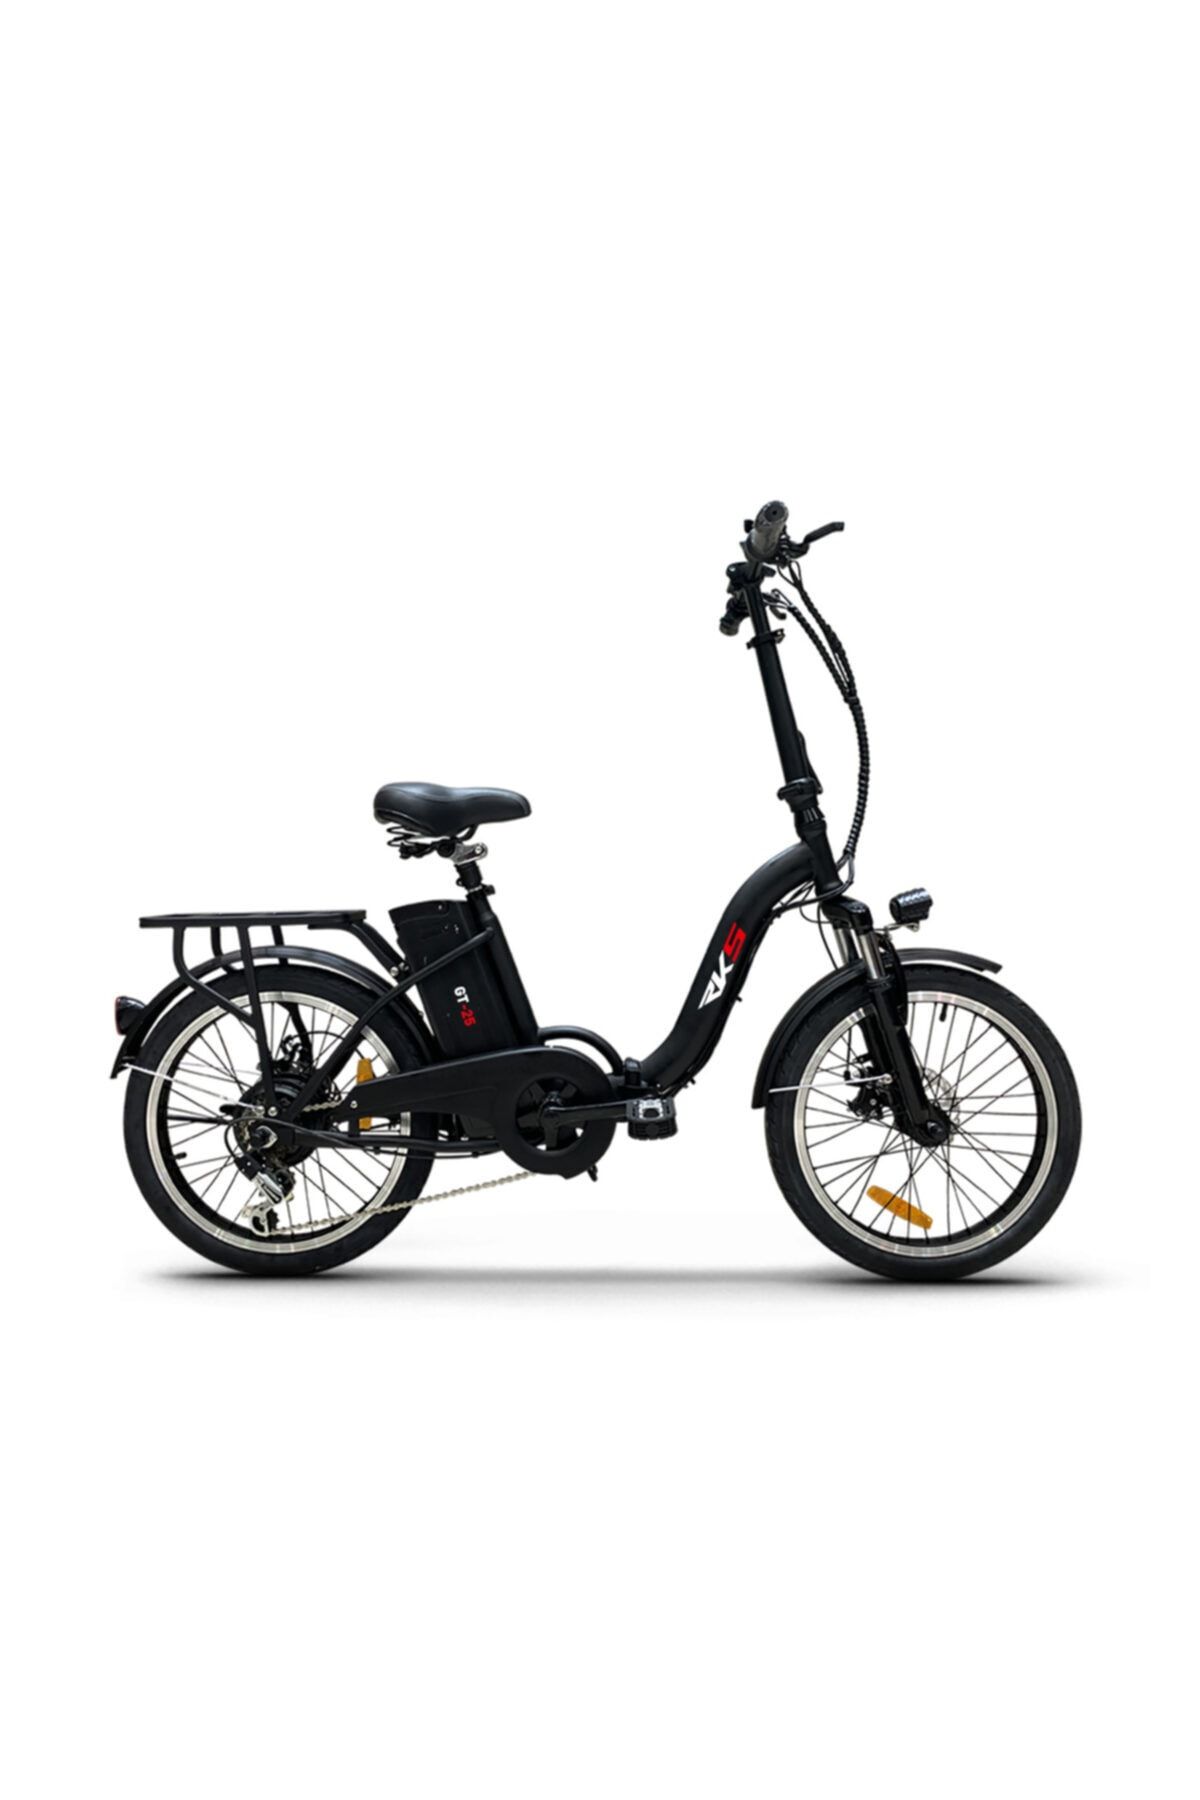 RKS Gt25 Elektrikli Bisiklet 250w 36v 7,8ah Siyah - E-bike